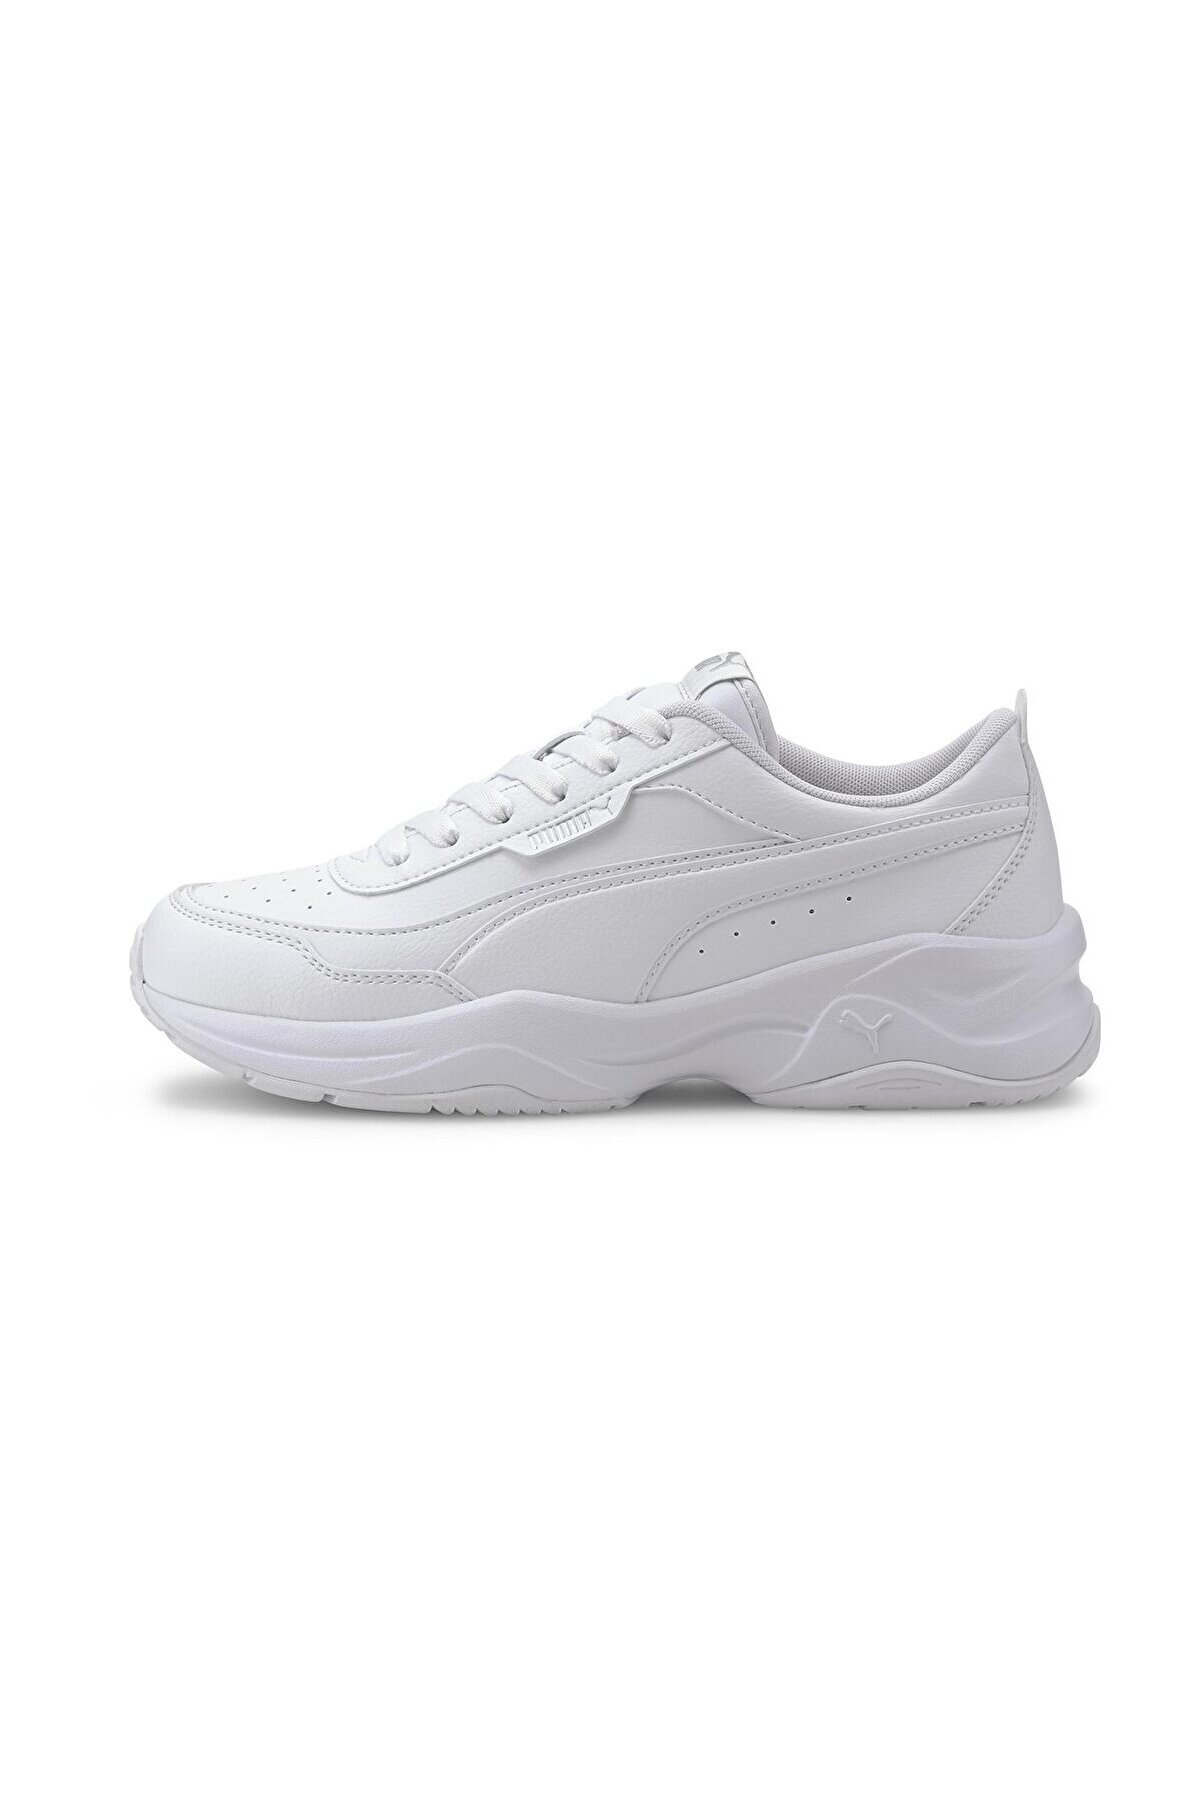 Puma Kadın Beyaz Cilia Mode Günlük Ayakkabı 37112502